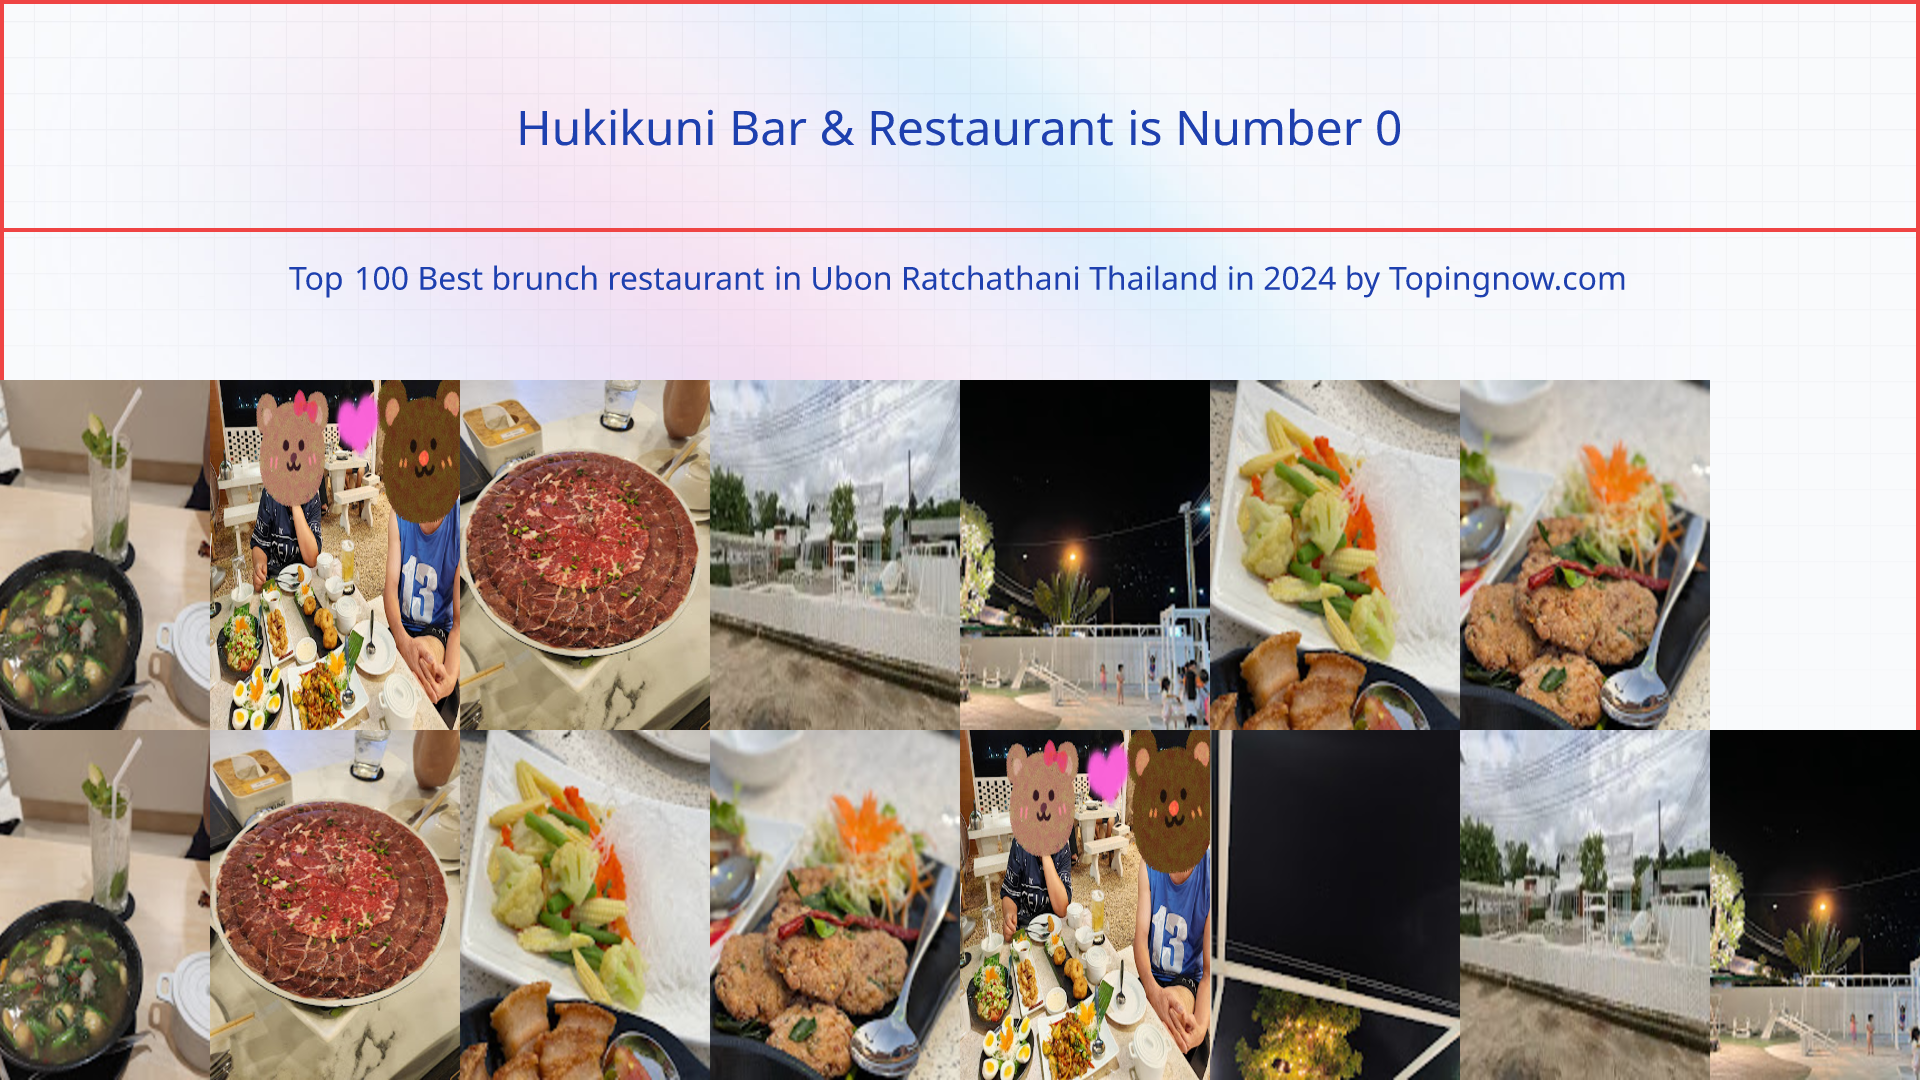 Hukikuni Bar & Restaurant: Top 100 Best brunch restaurant in Ubon Ratchathani Thailand in 2024